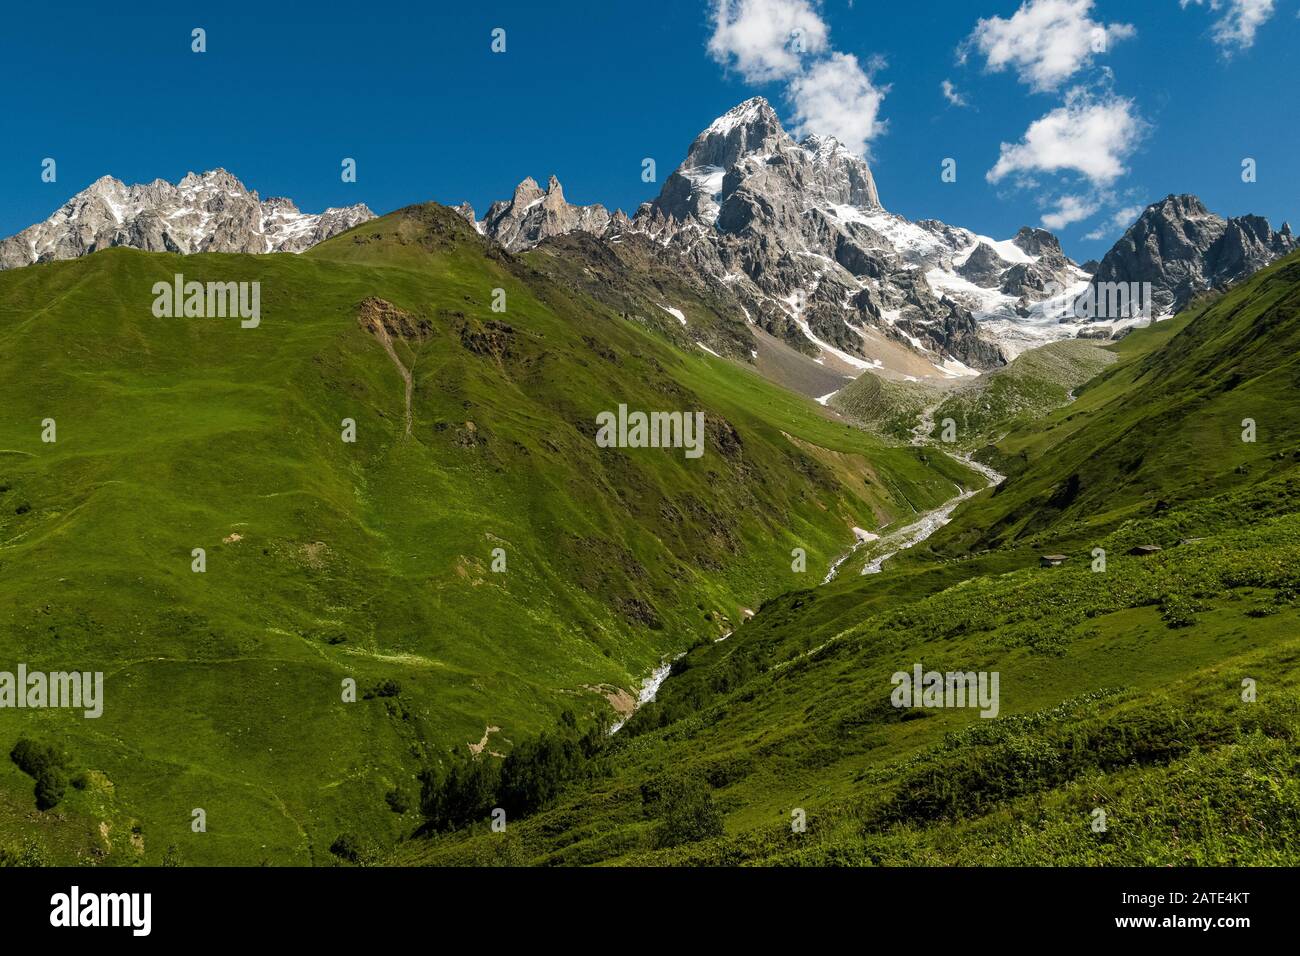 Caucase paysage d'été. Vue vers le sommet de l'ofMt. Ushba, l'une des montagnes les plus meurtrières de la région de Svaneti en Géorgie Banque D'Images